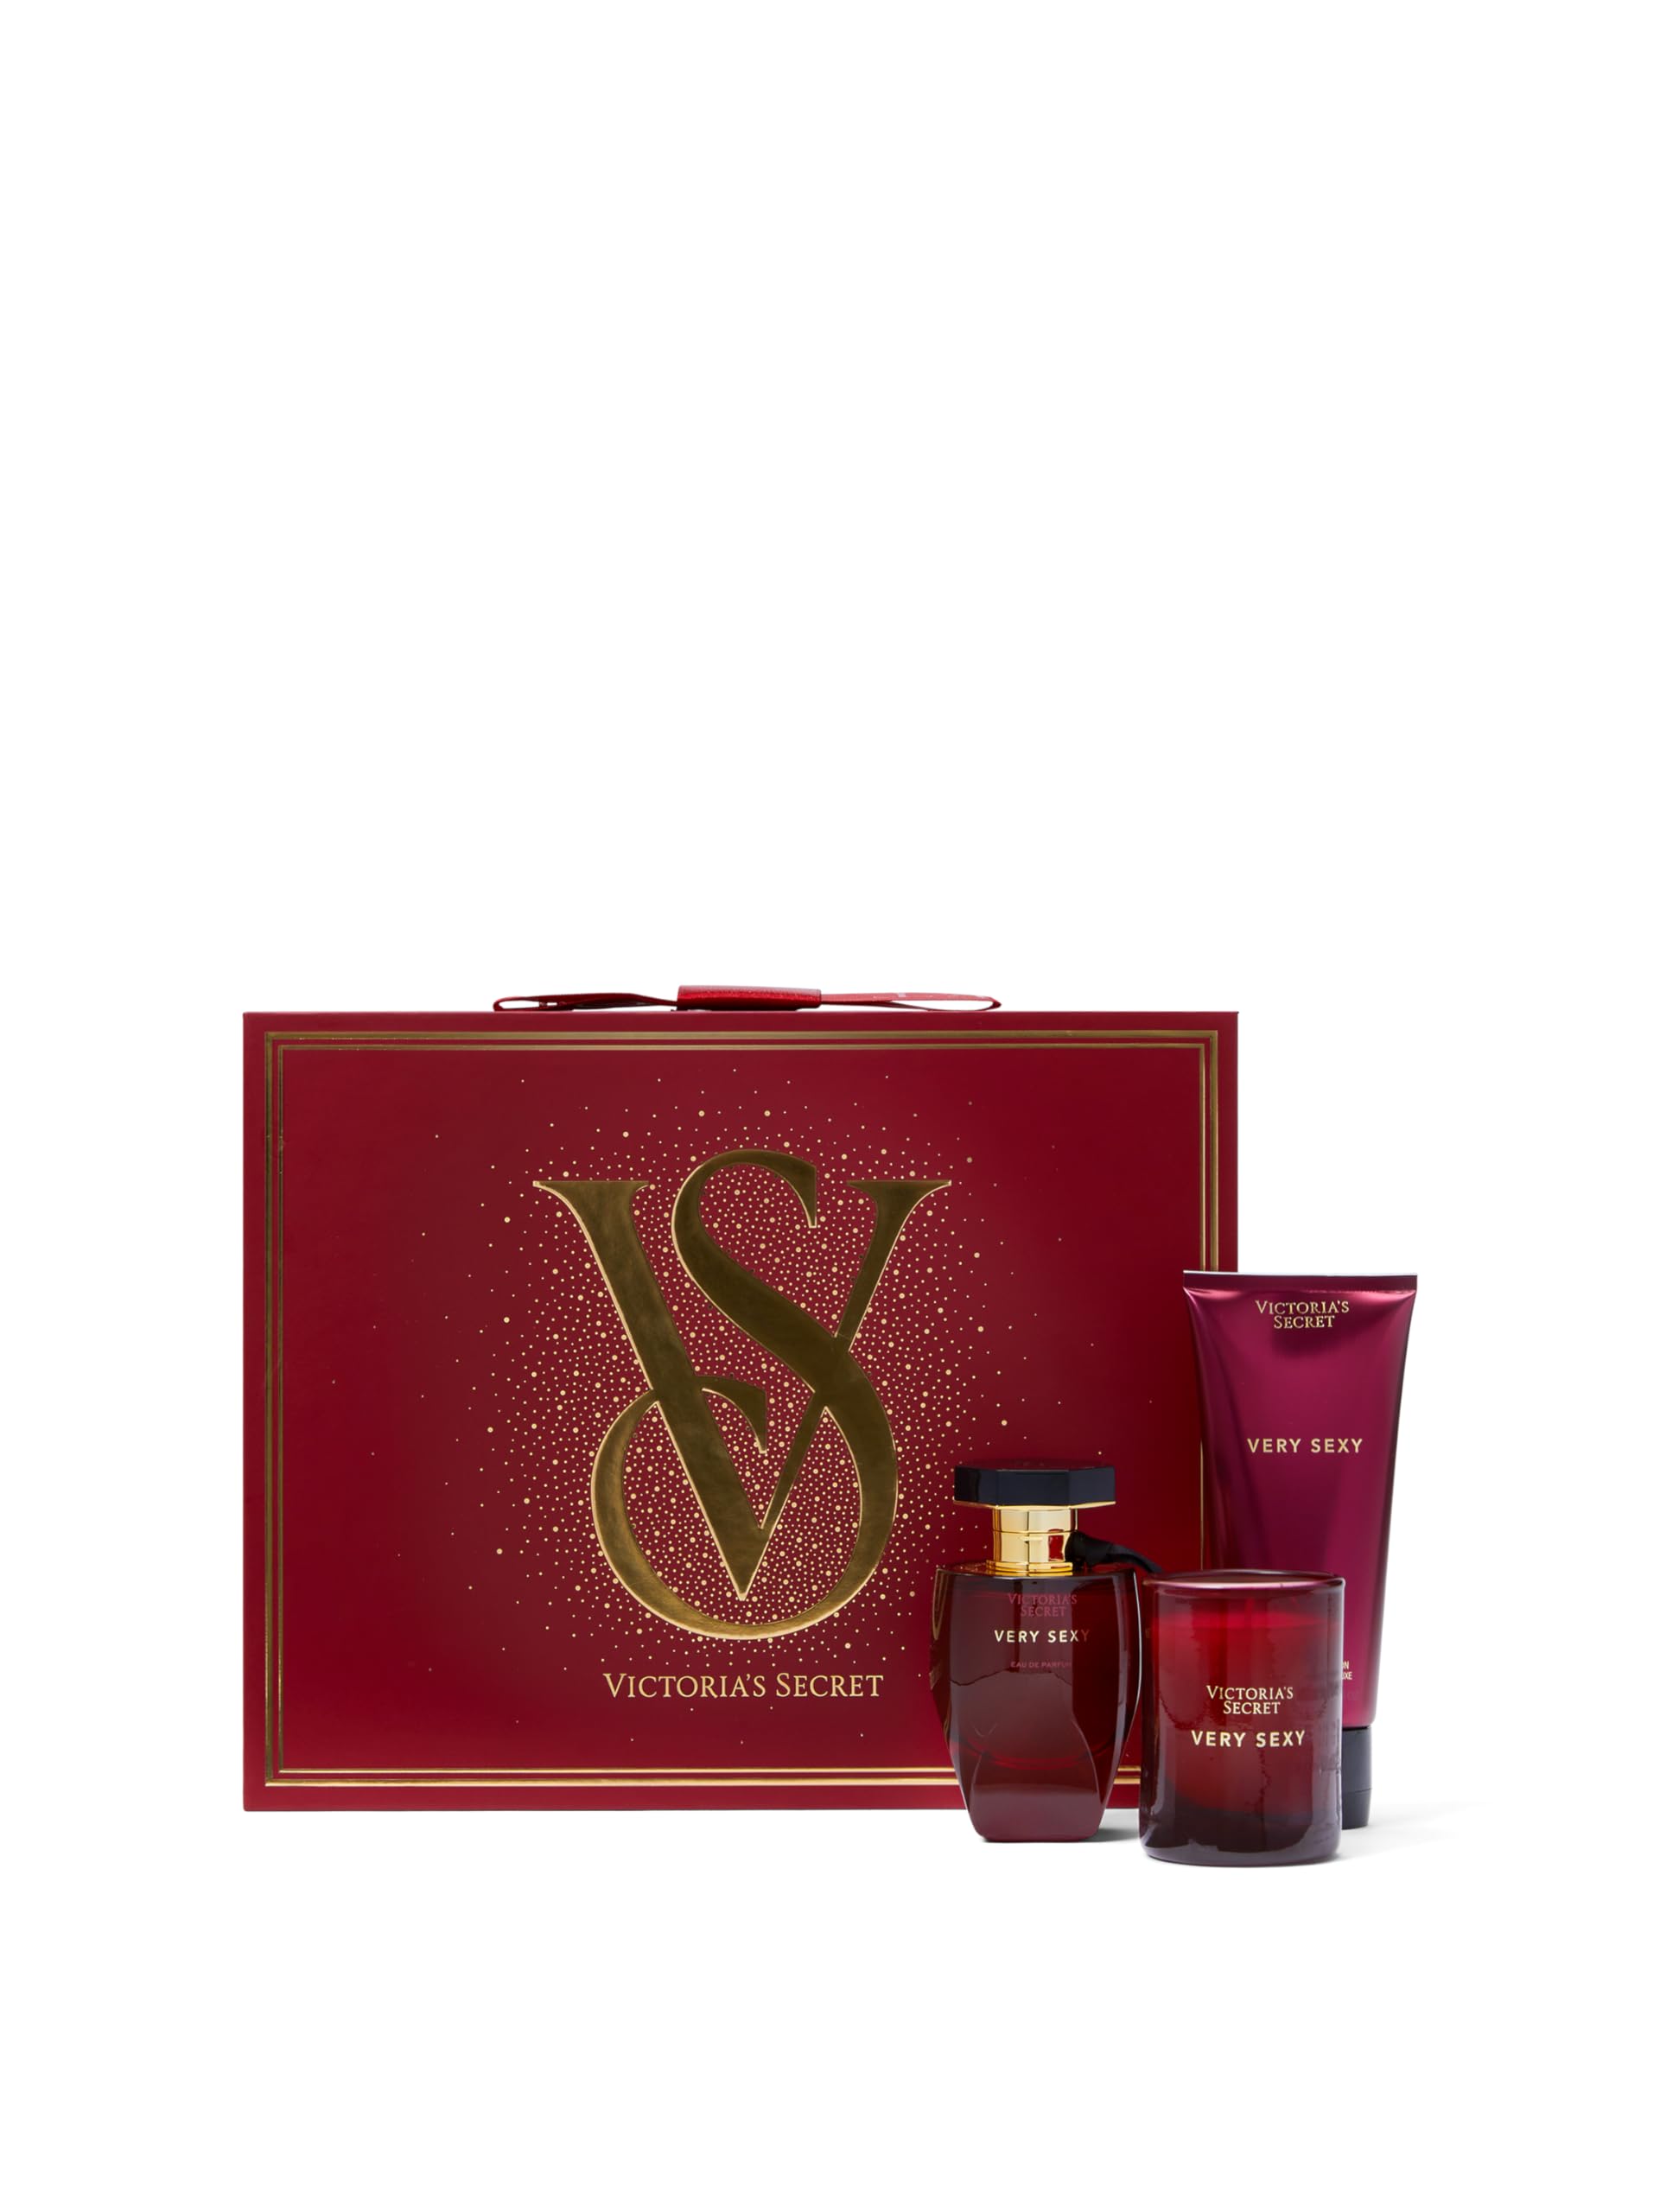 Victoria's Secret Very Sexy 3 Piece Luxe Fragrance Gift Set: 1.7 oz. Eau de Parfum, Travel Lotion, & Candle